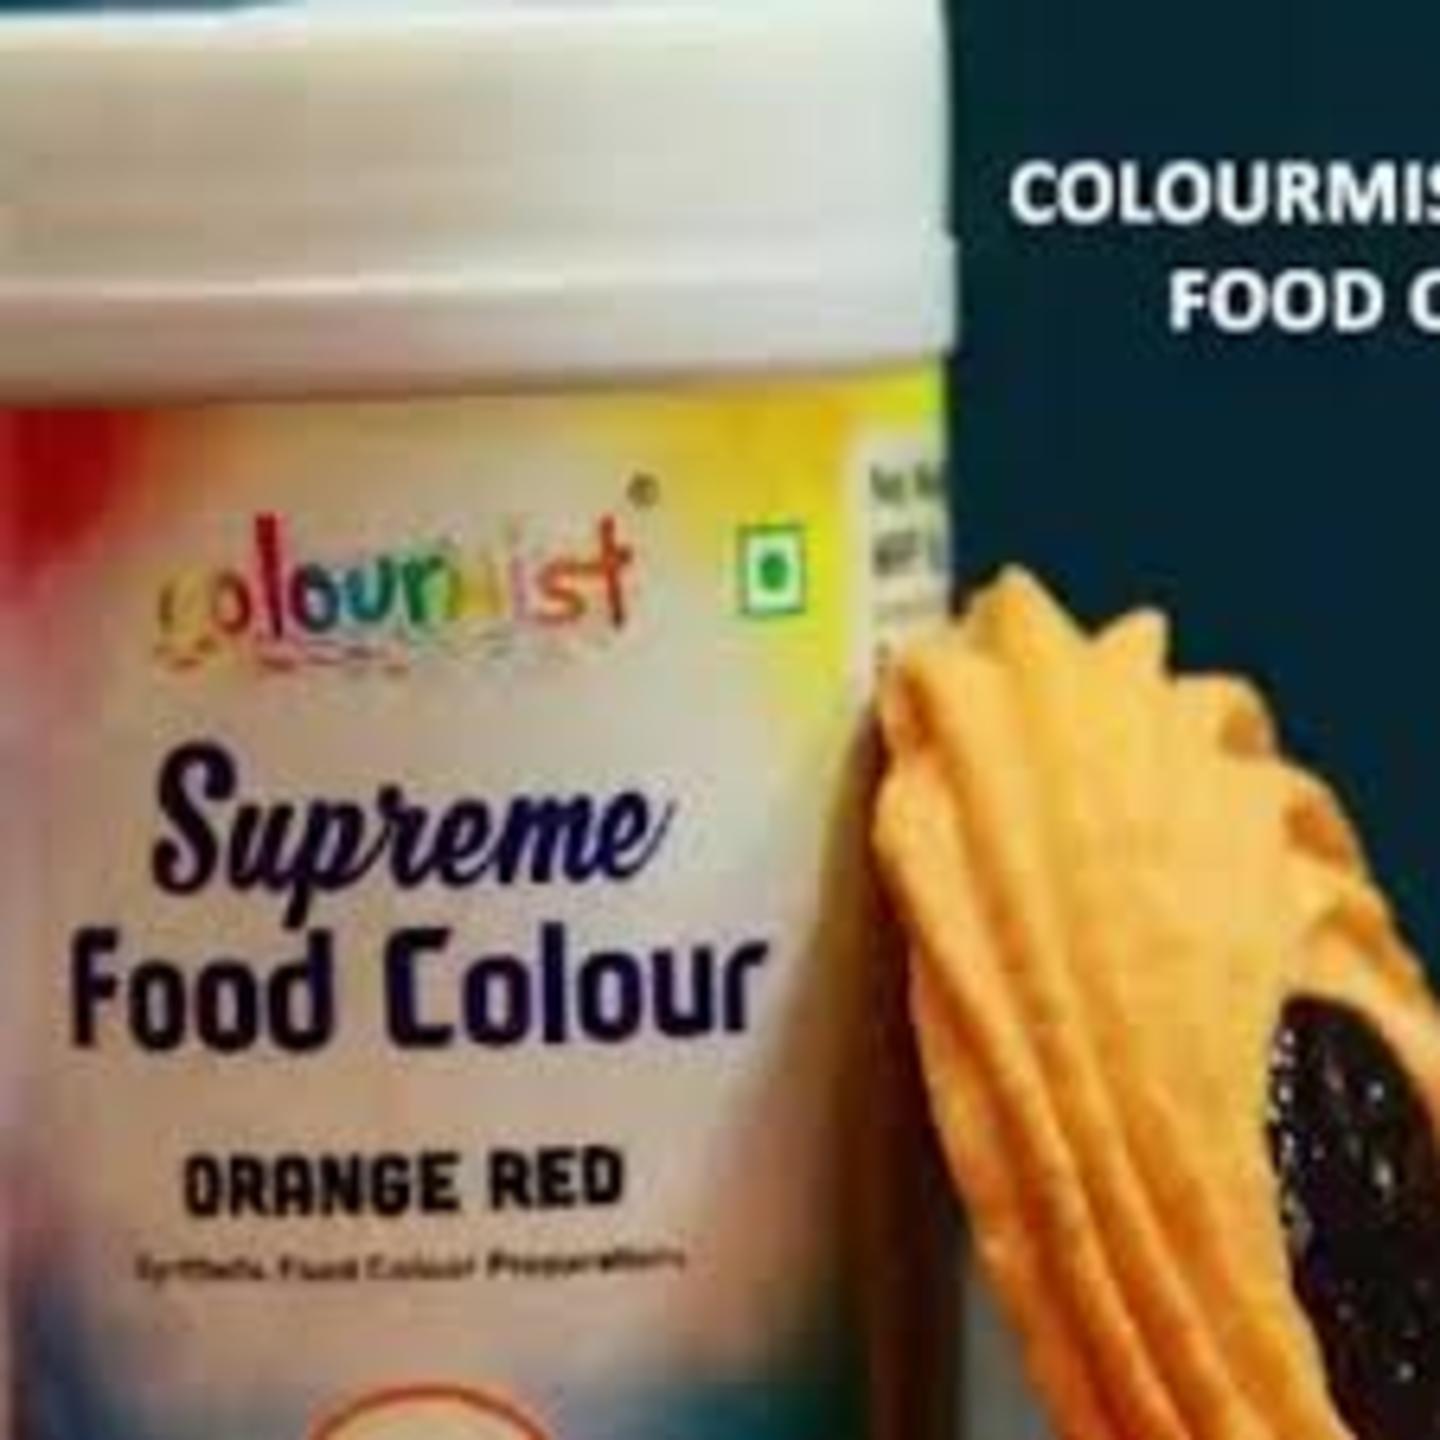 Colourmist Supreme Food Colour